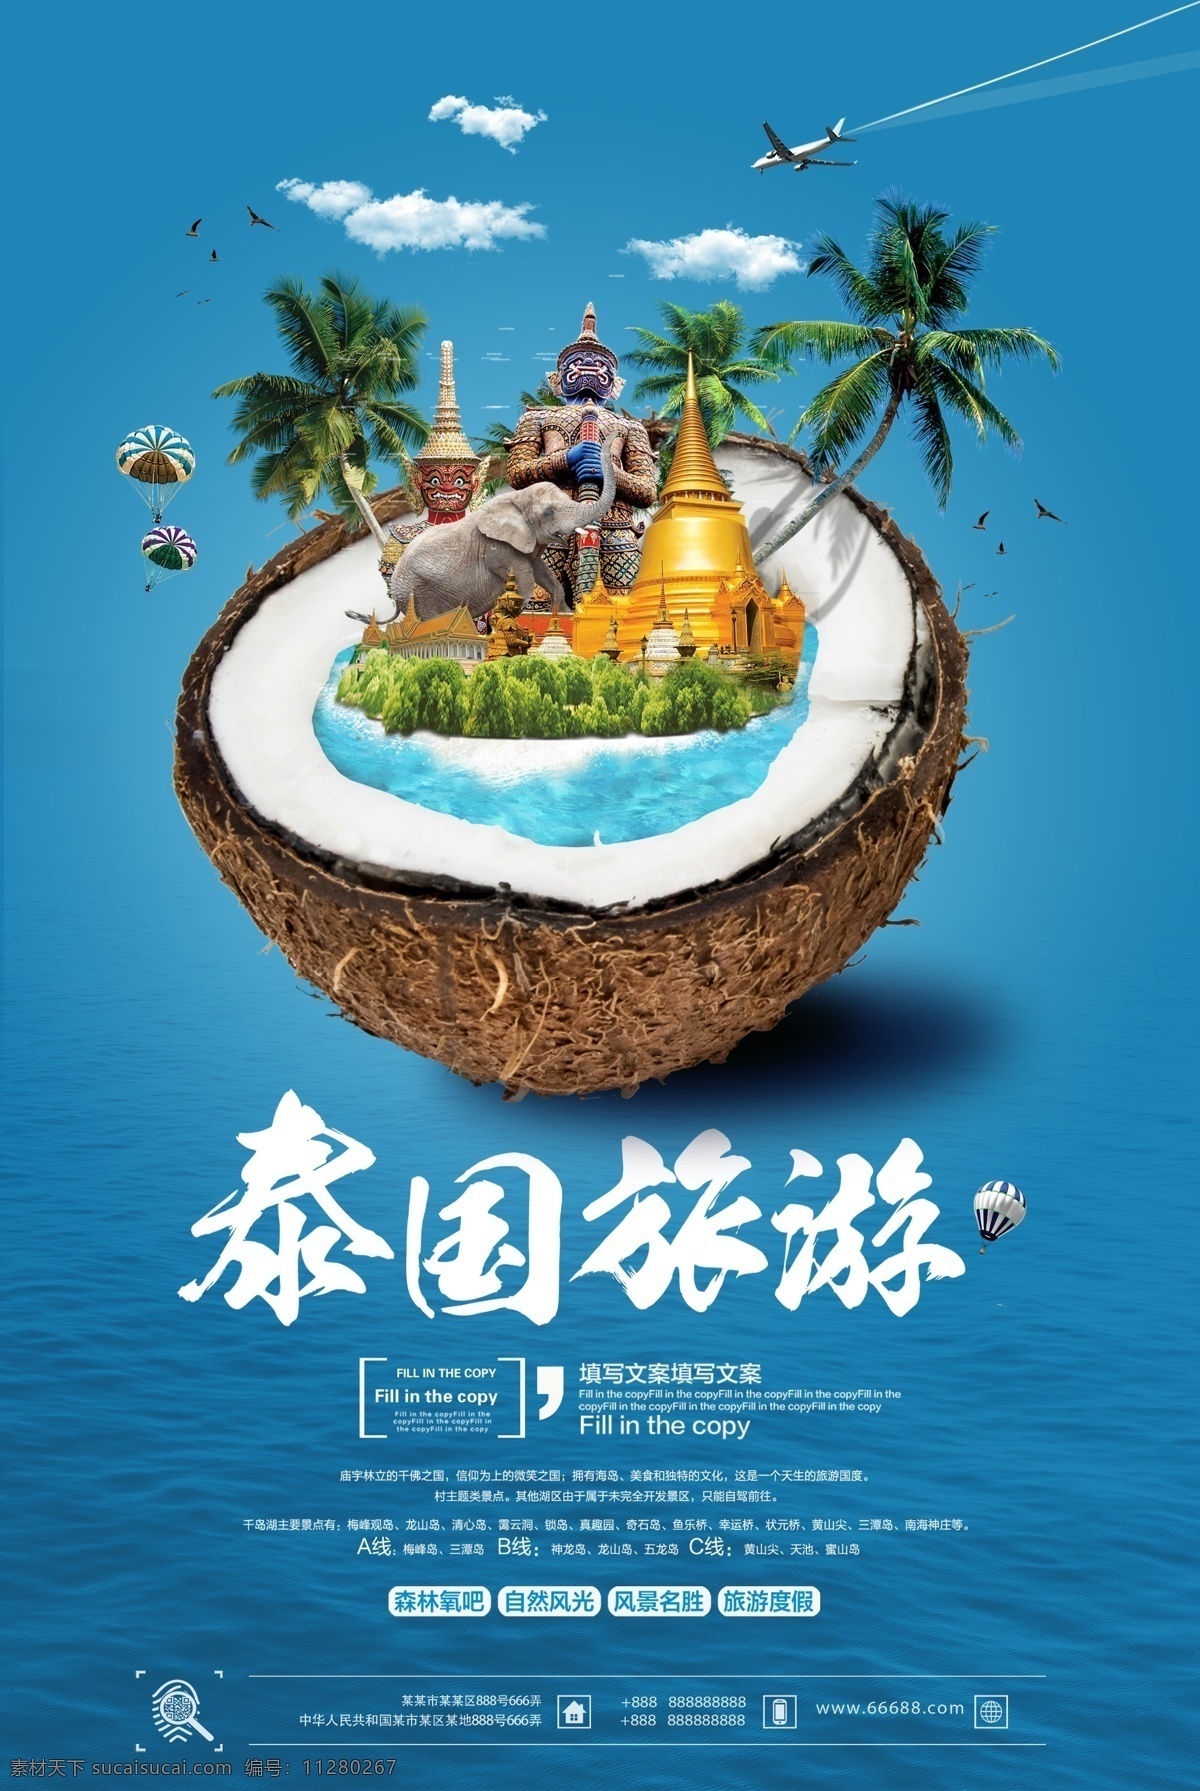 清新 简约 夏季 泰国 旅行 海报 椰子素材 椰子树 飞机素材 清新夏季 东南亚旅行 夏日旅行海报